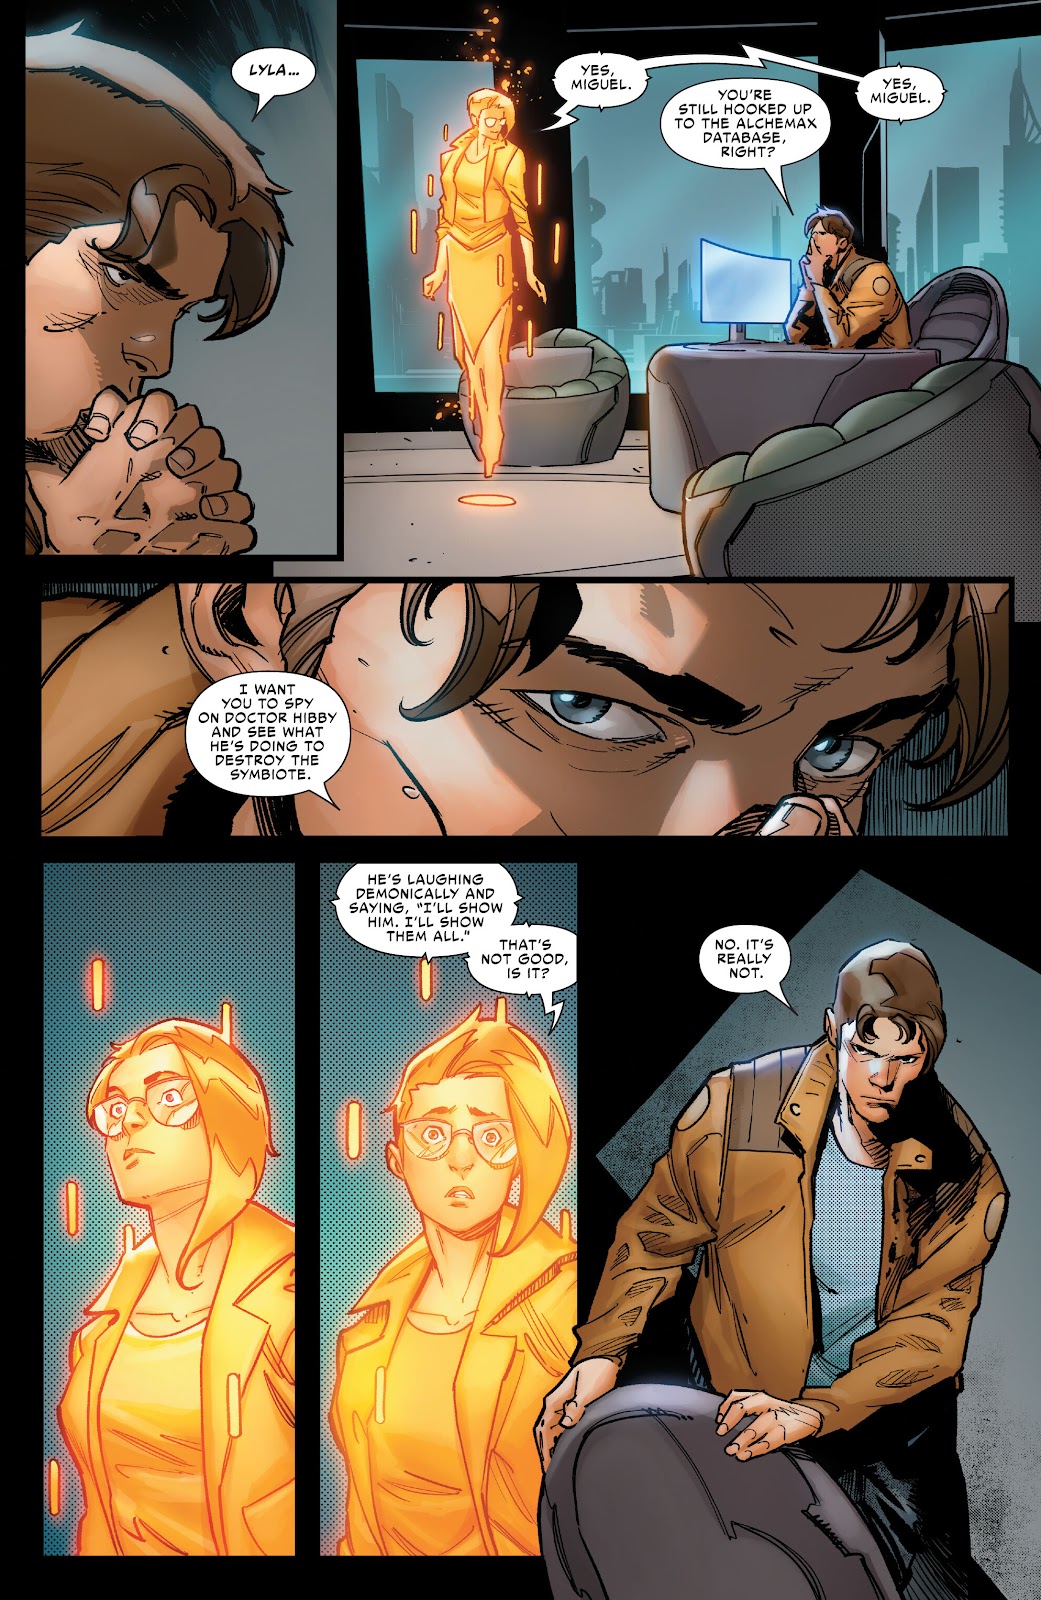 Symbiote Spider-Man 2099 issue 1 - Page 18